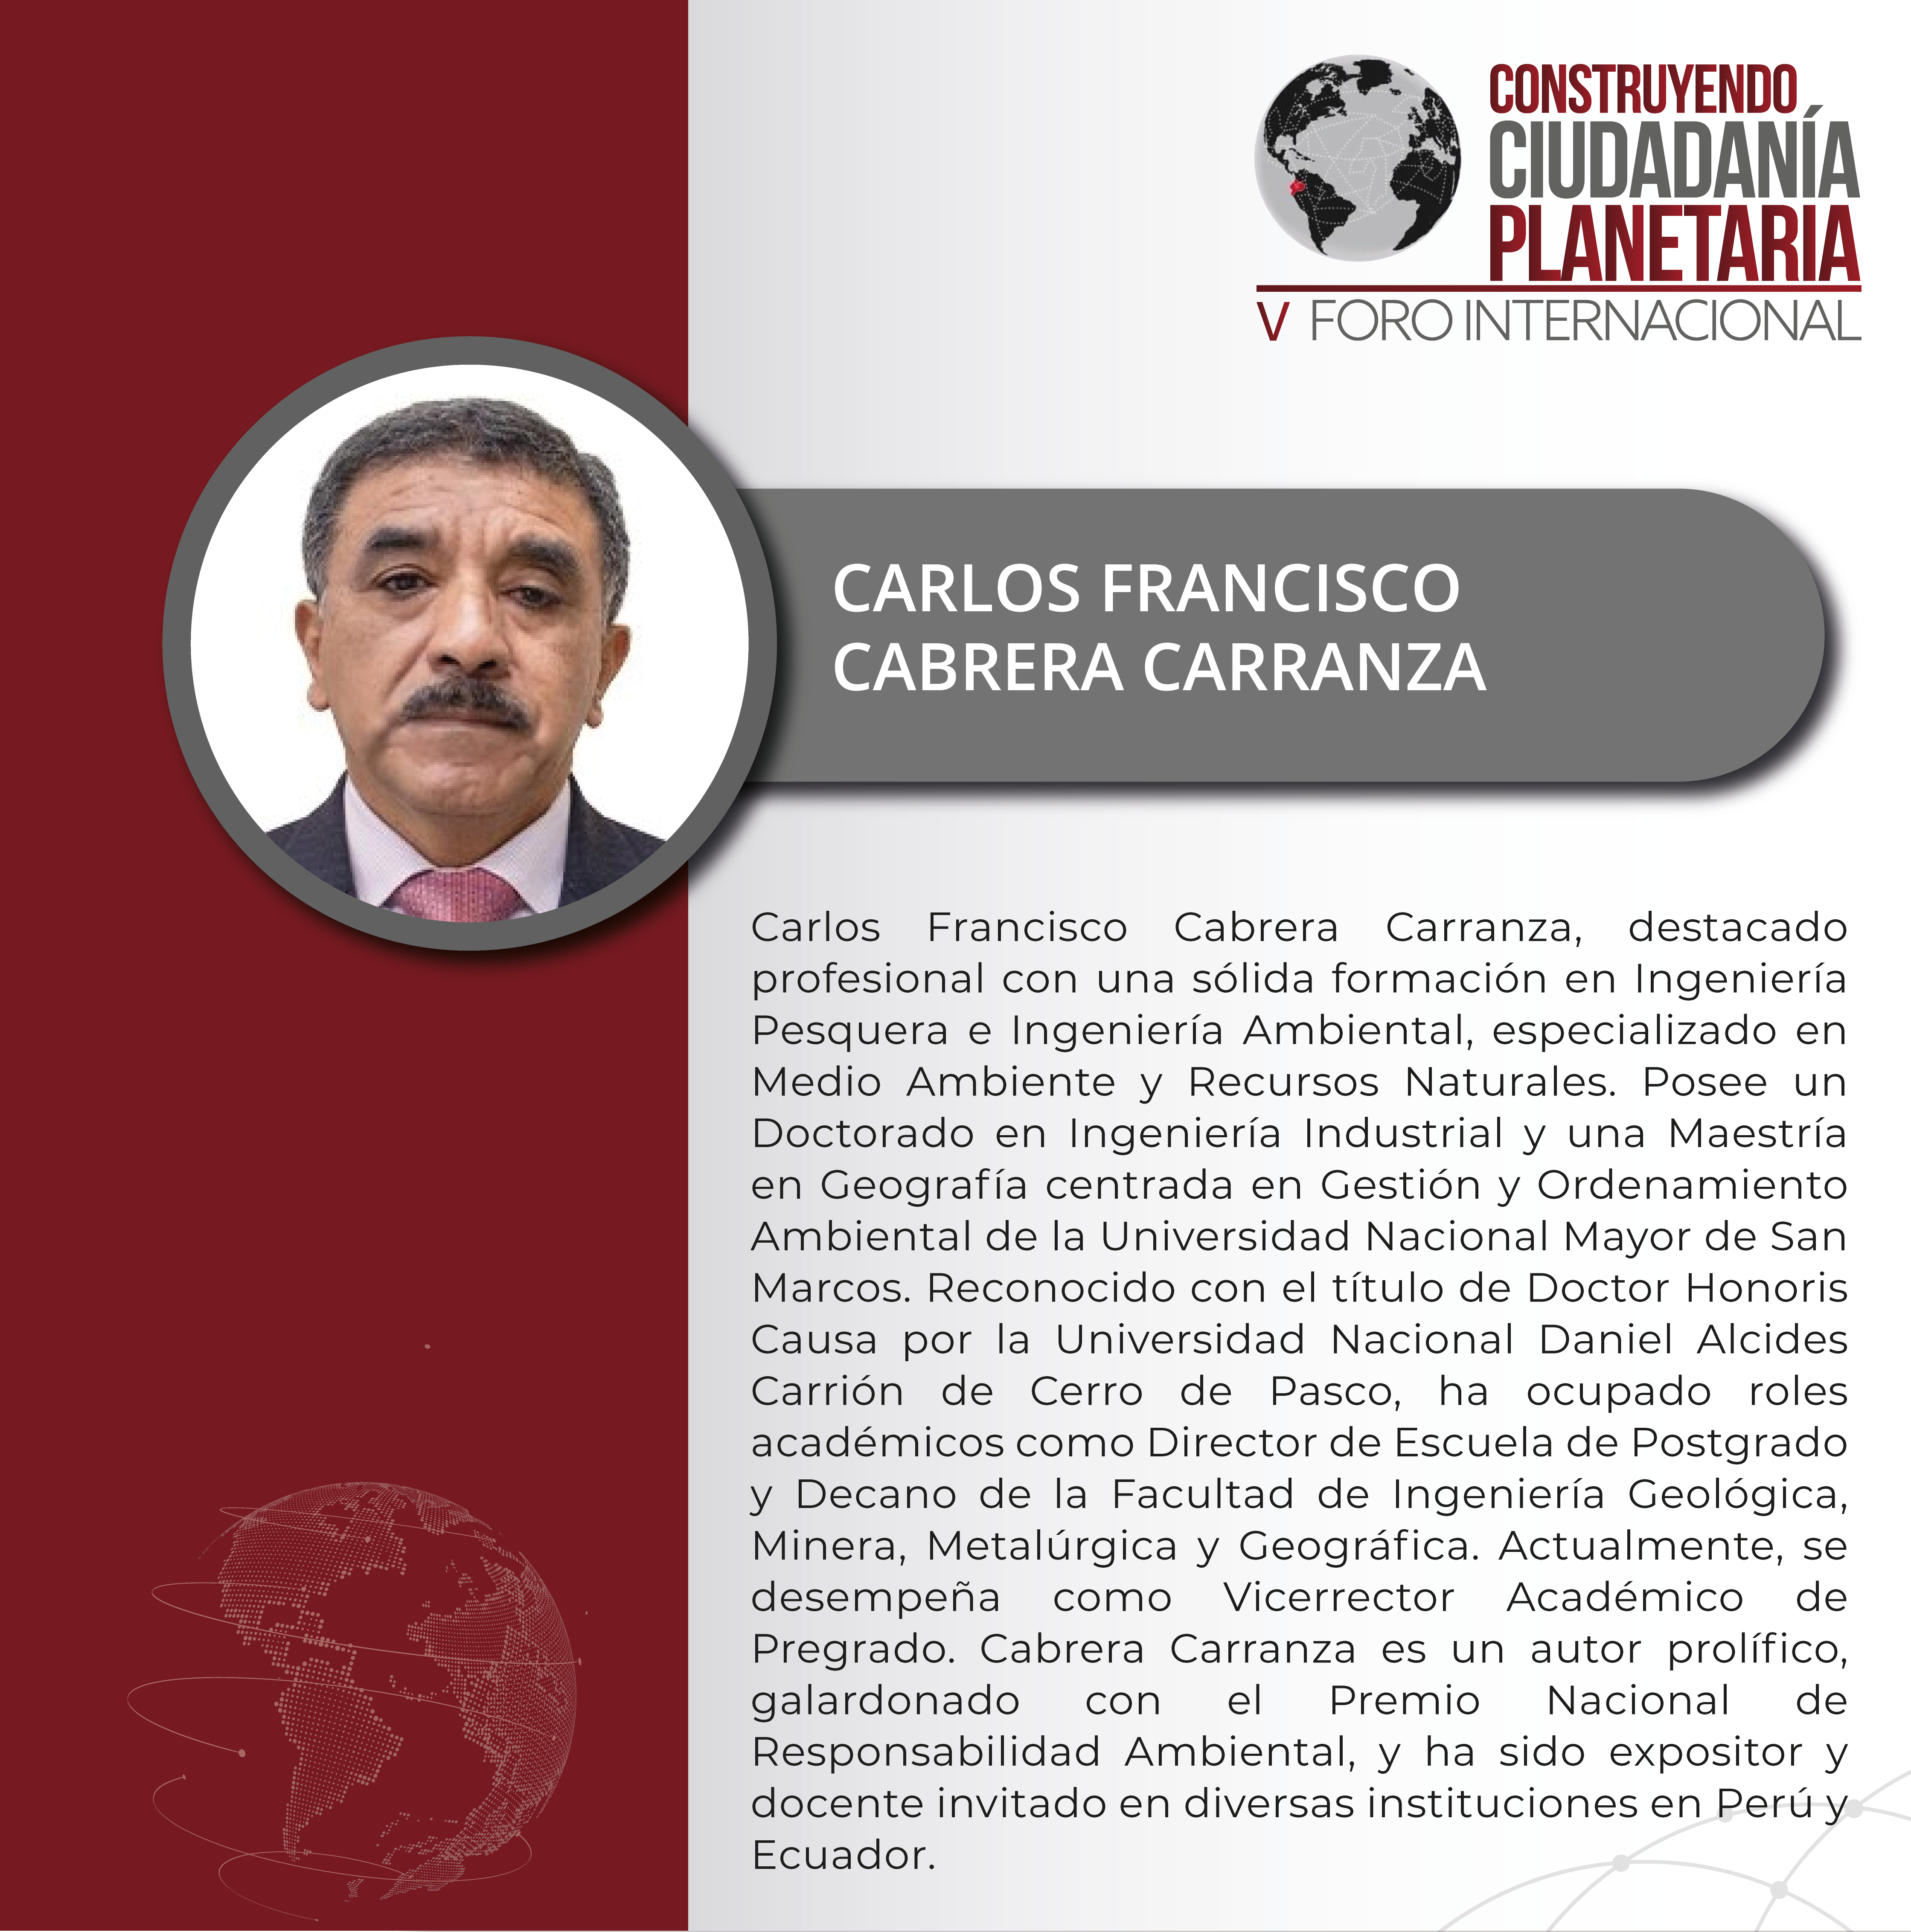 CARLOS FRANCISCO CABRERA CARRANZA